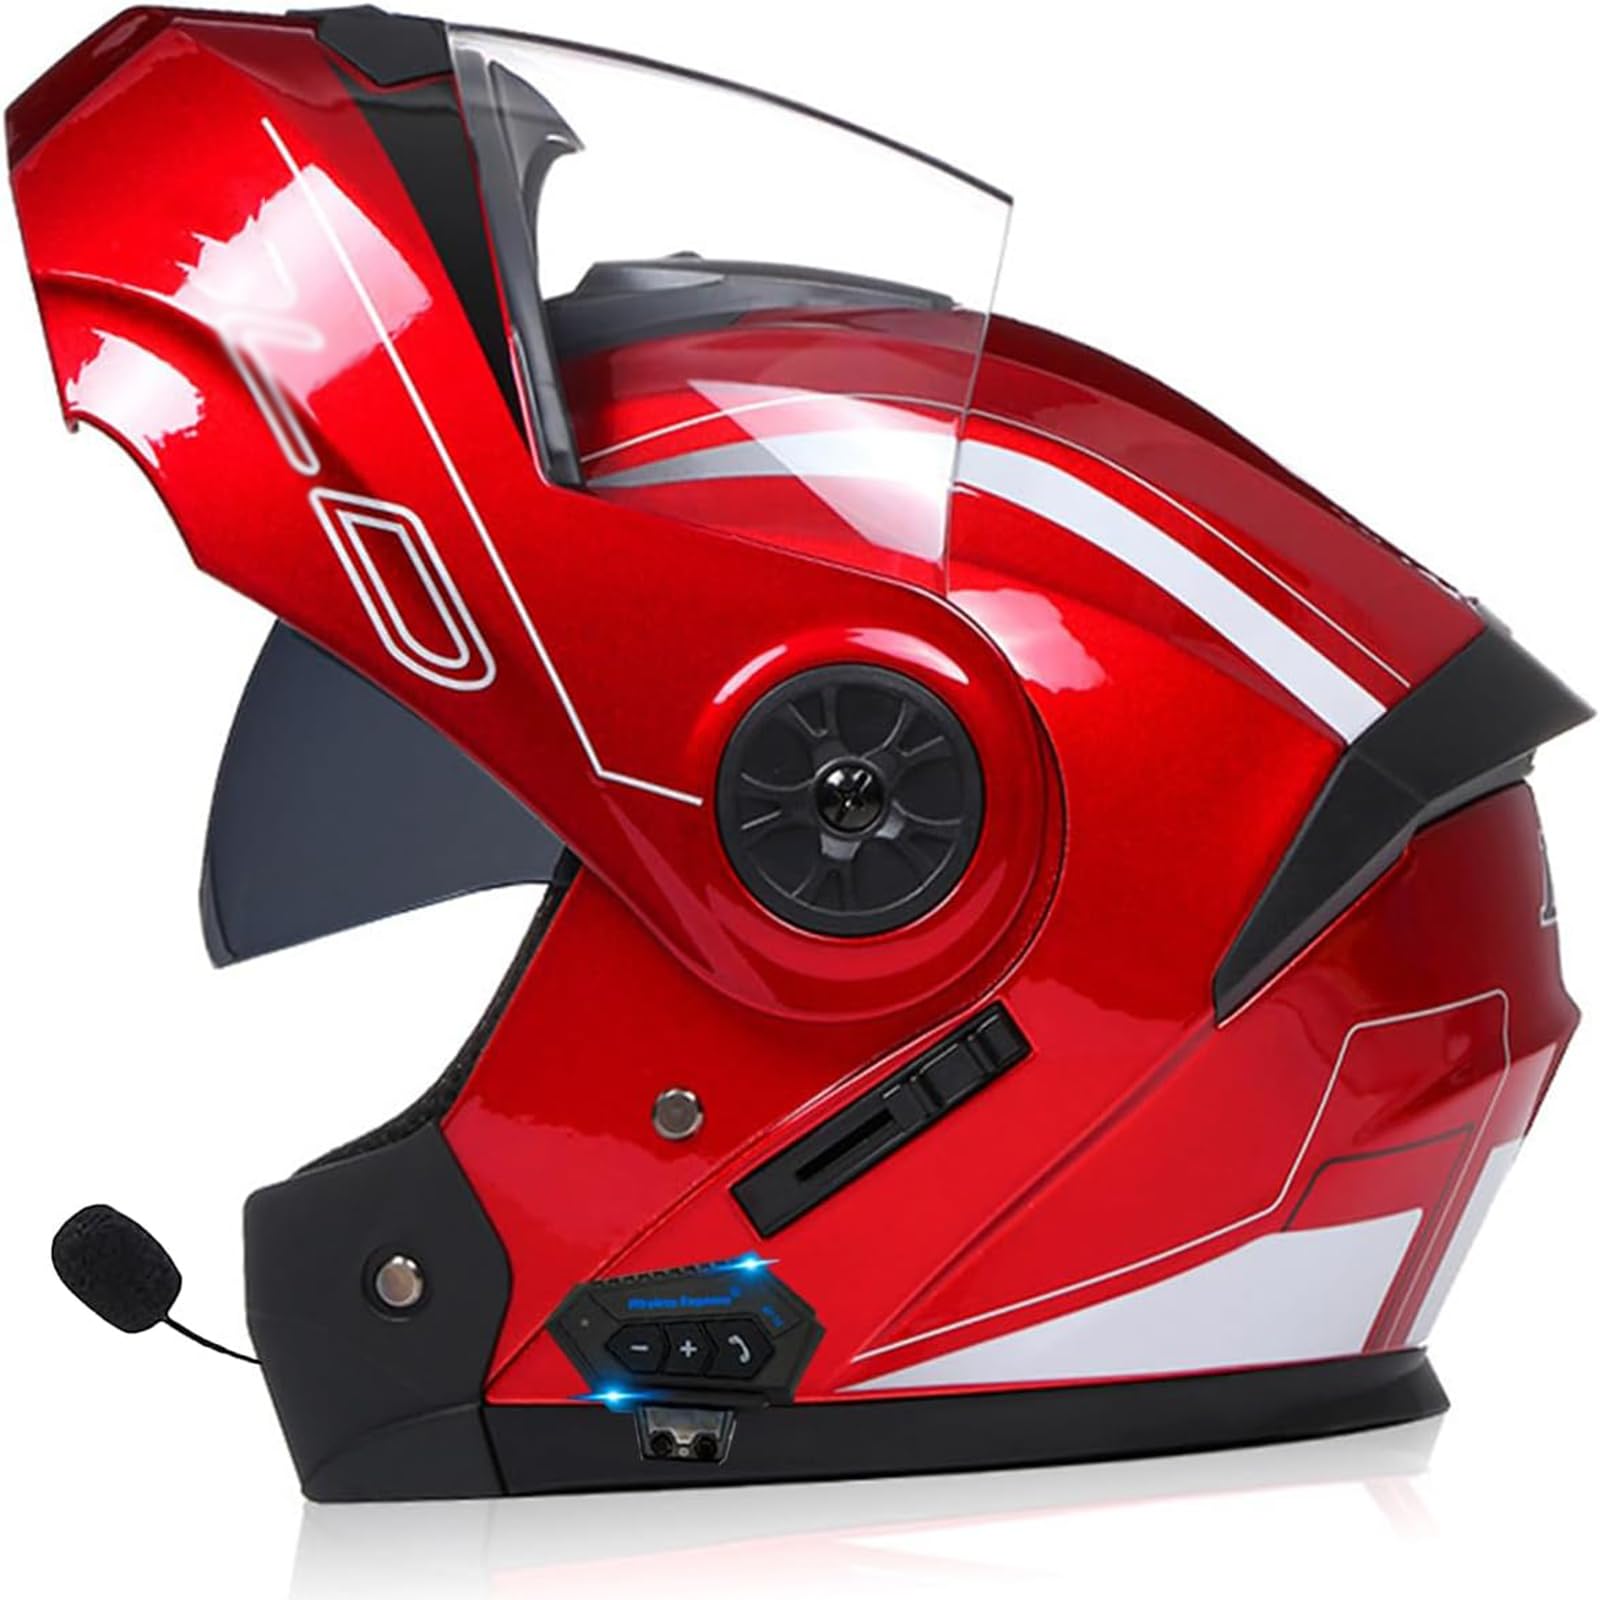 Motorrad Integrierter Bluetooth-Helm Mit Doppelvisier,Adults Klapphelm Mit Bluetooth, Motorradhelm Sturzhelm Für Herren Und Damen ECE Genehmigt Automatische Reaktion von SDPPTY